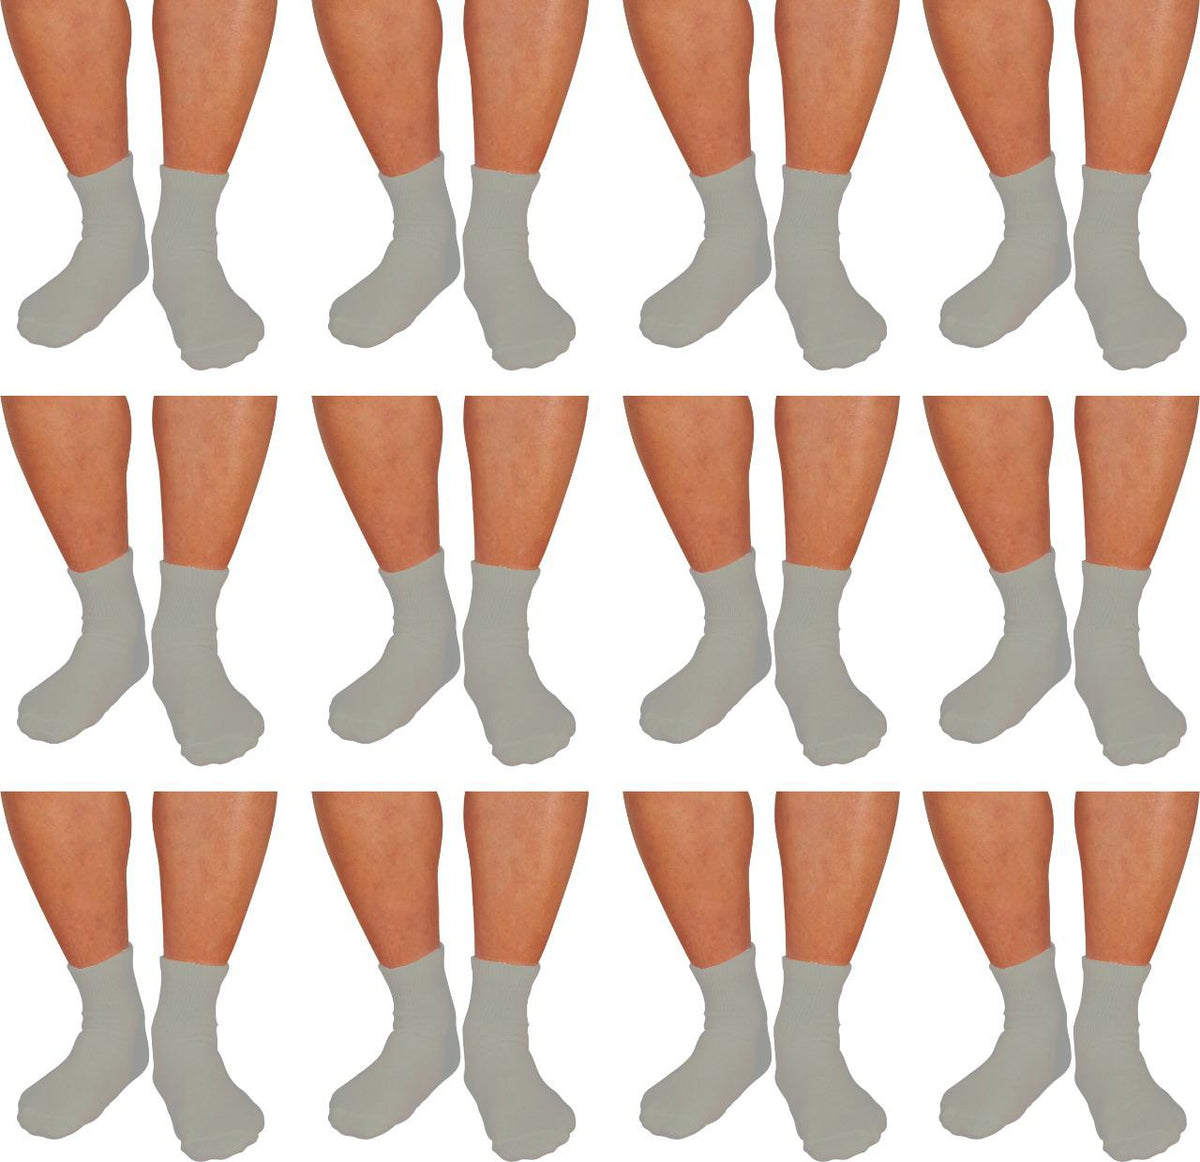 Diabetic Ankle Socks, Non-Binding Circulatory Doctor Approved Cushion  Cotton Quarter Socks for Men's Women's 3,6,12 Pack